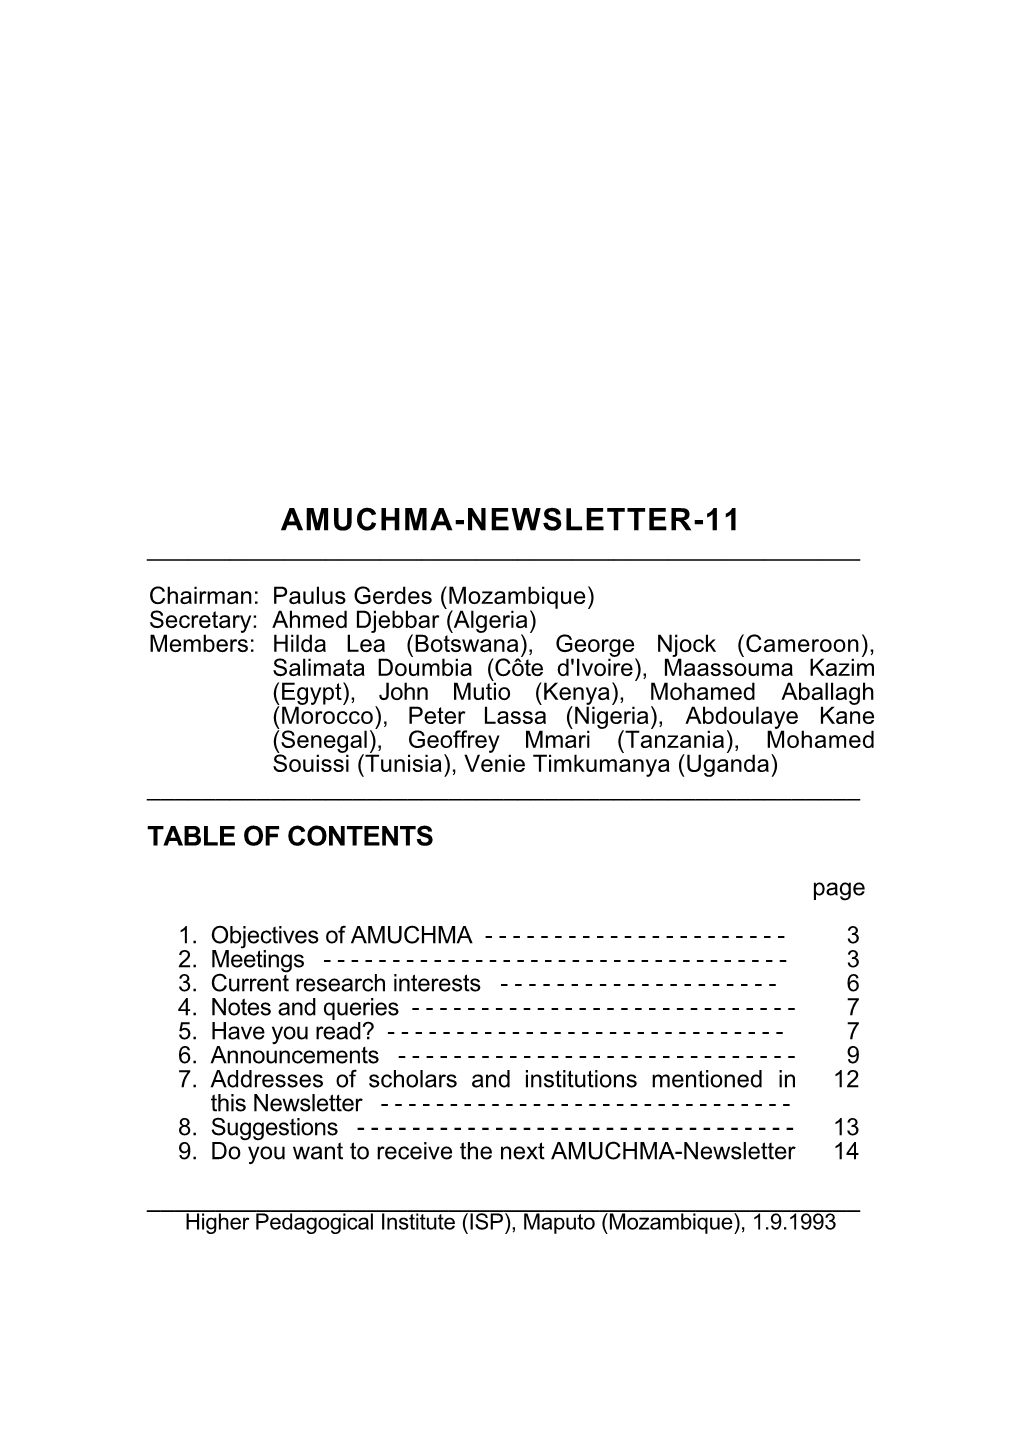 Amuchma-Newsletter-11